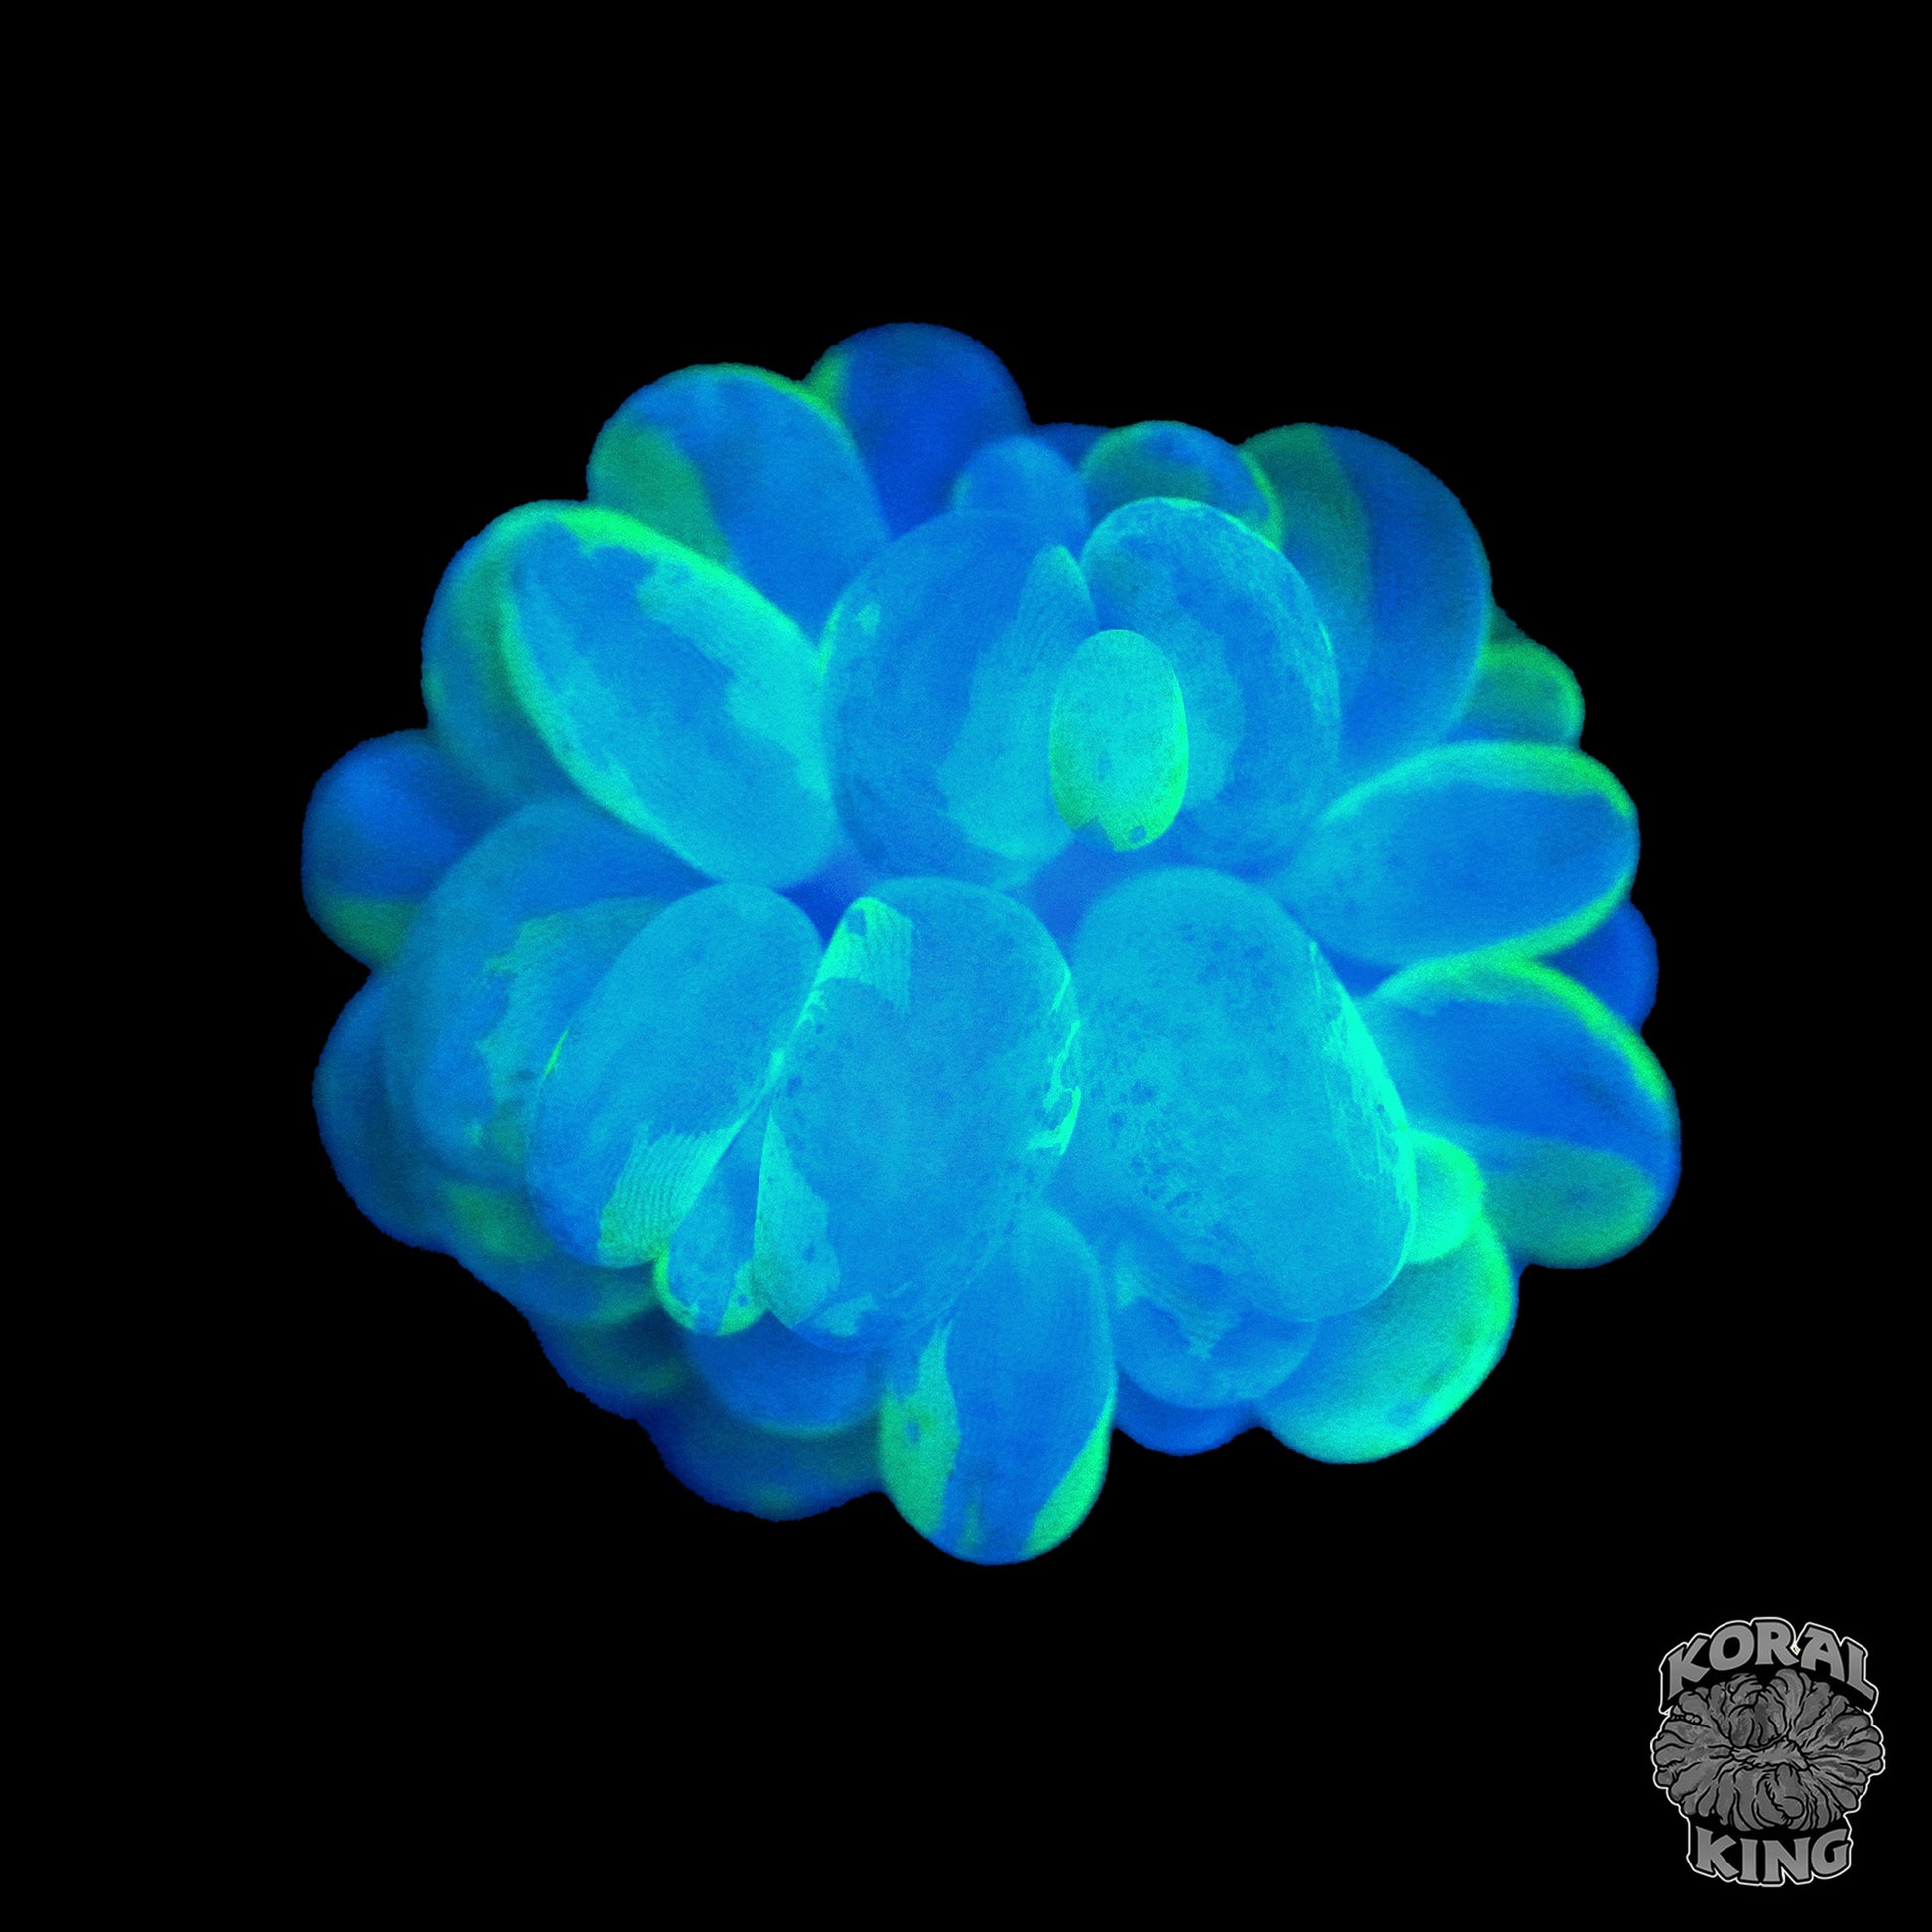 Splatter Bubble Coral - Koral King